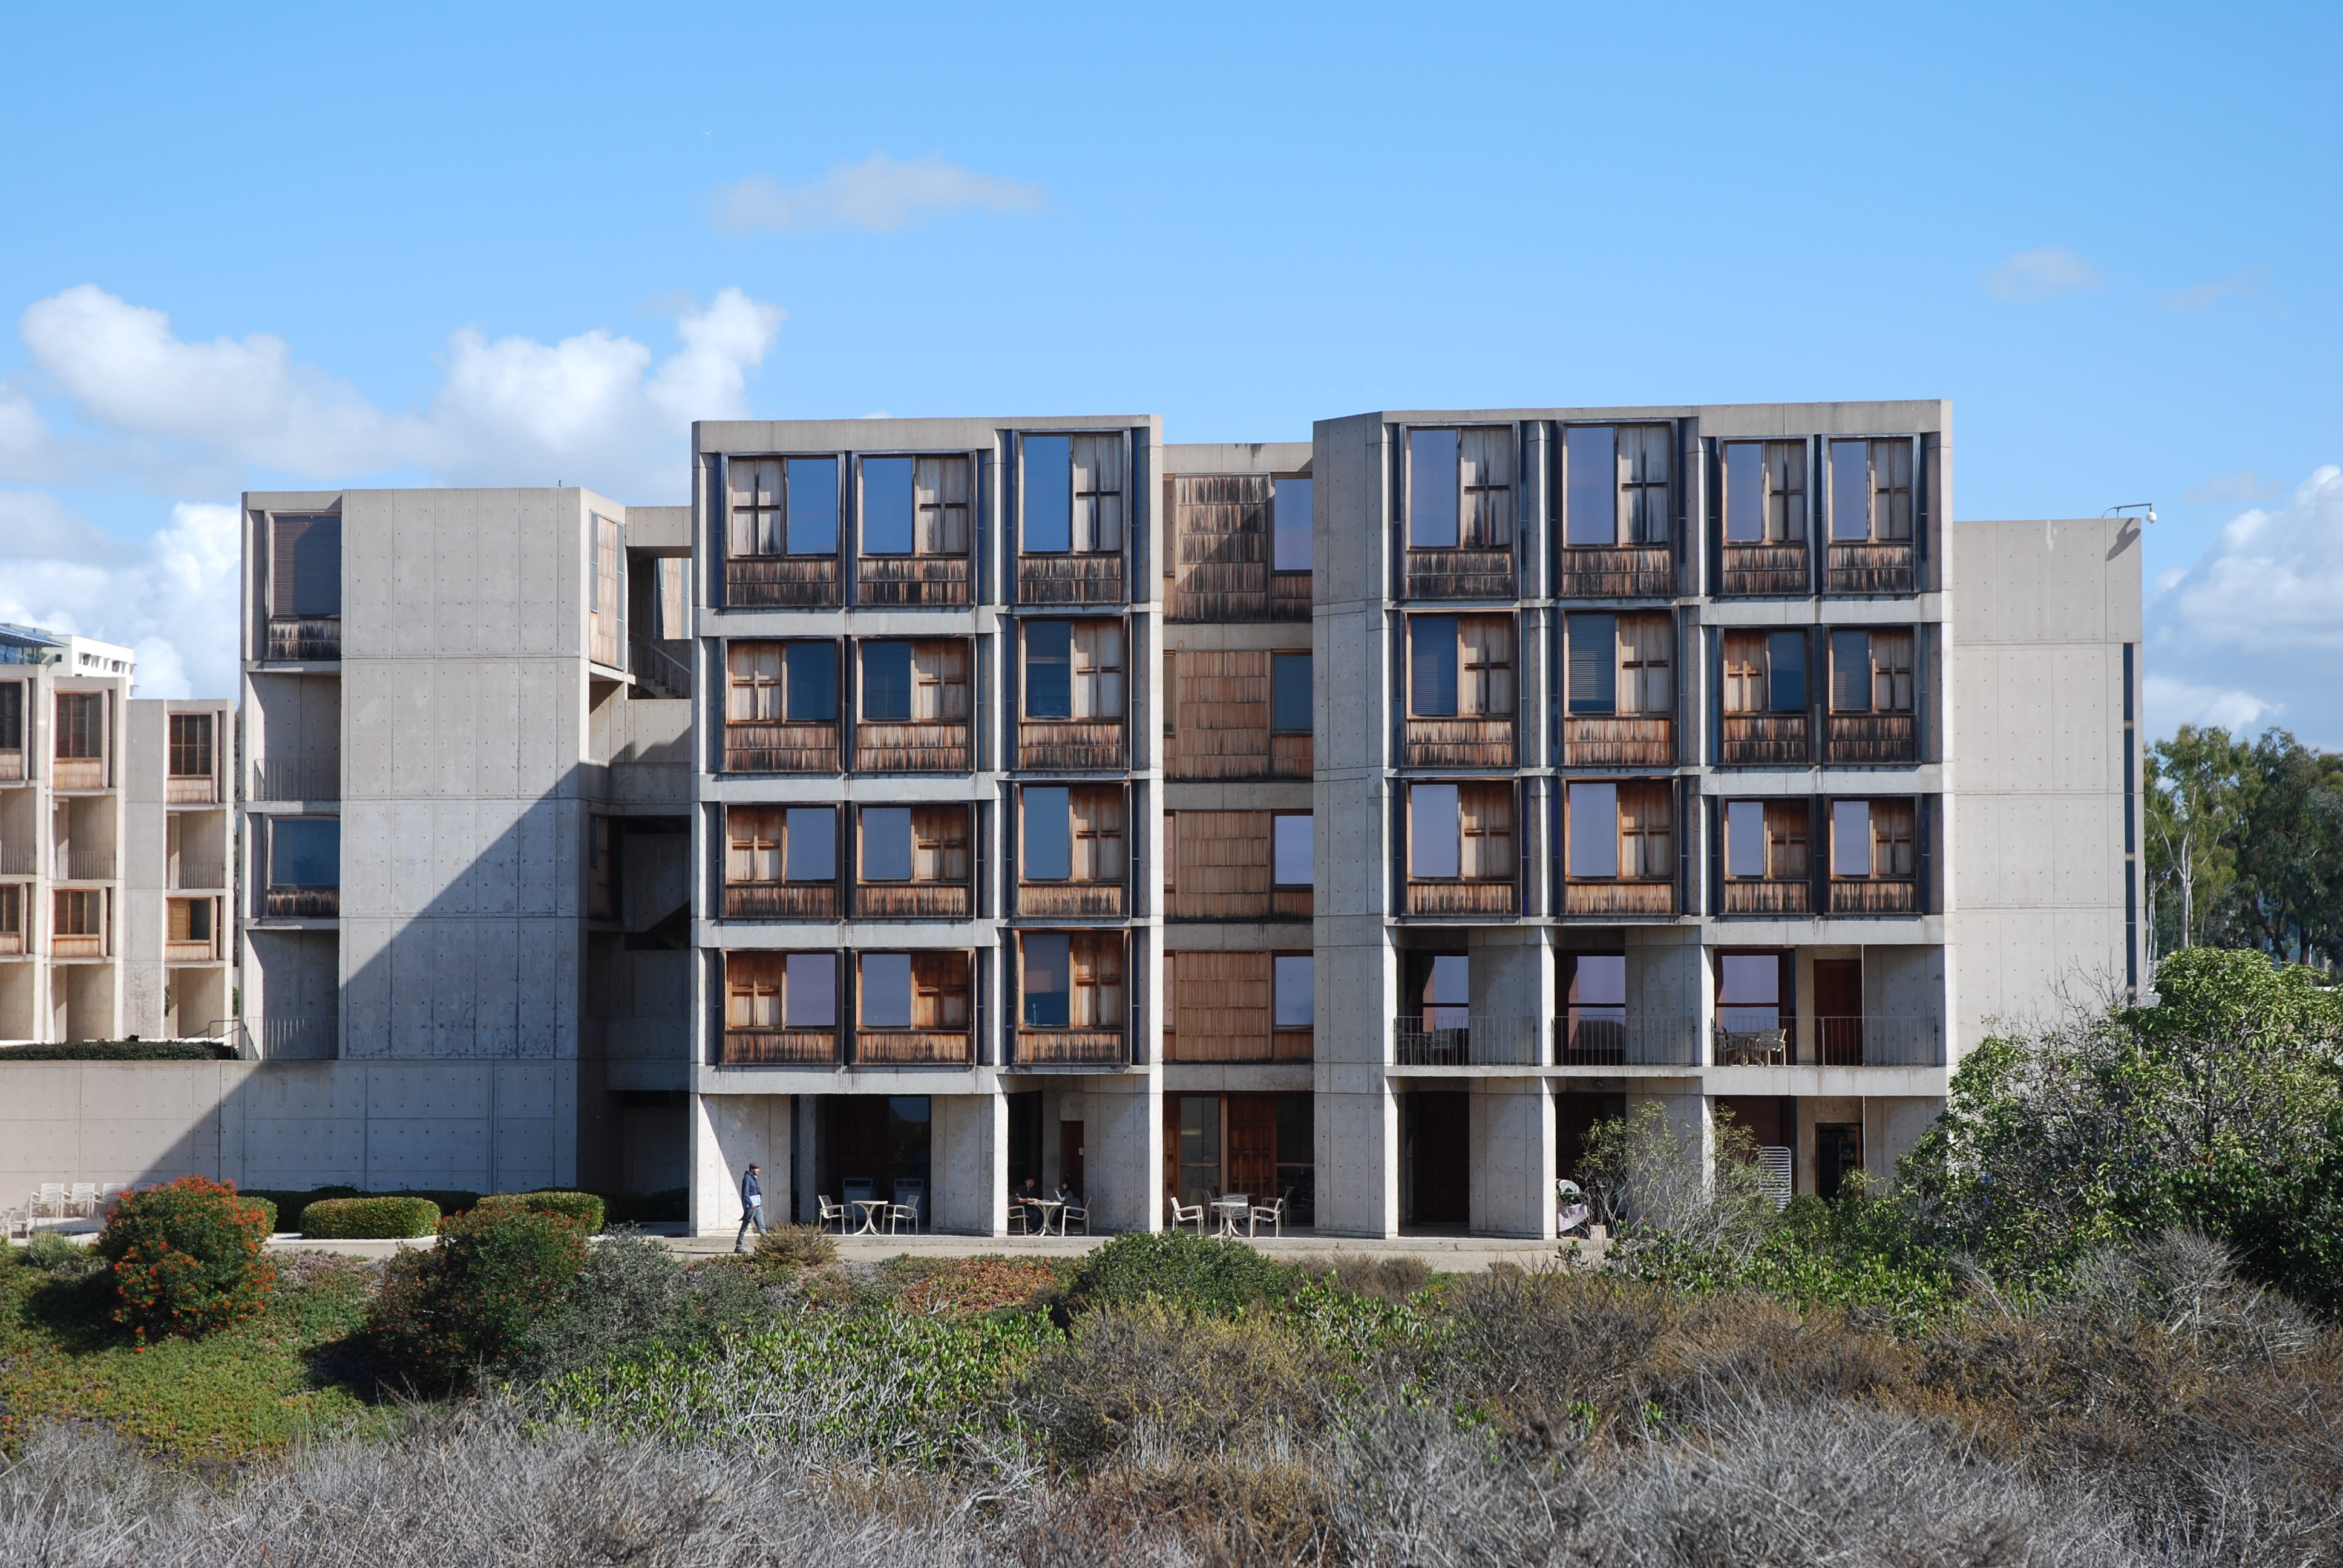 Louis Kahn Salk Institute in La Jolla, California